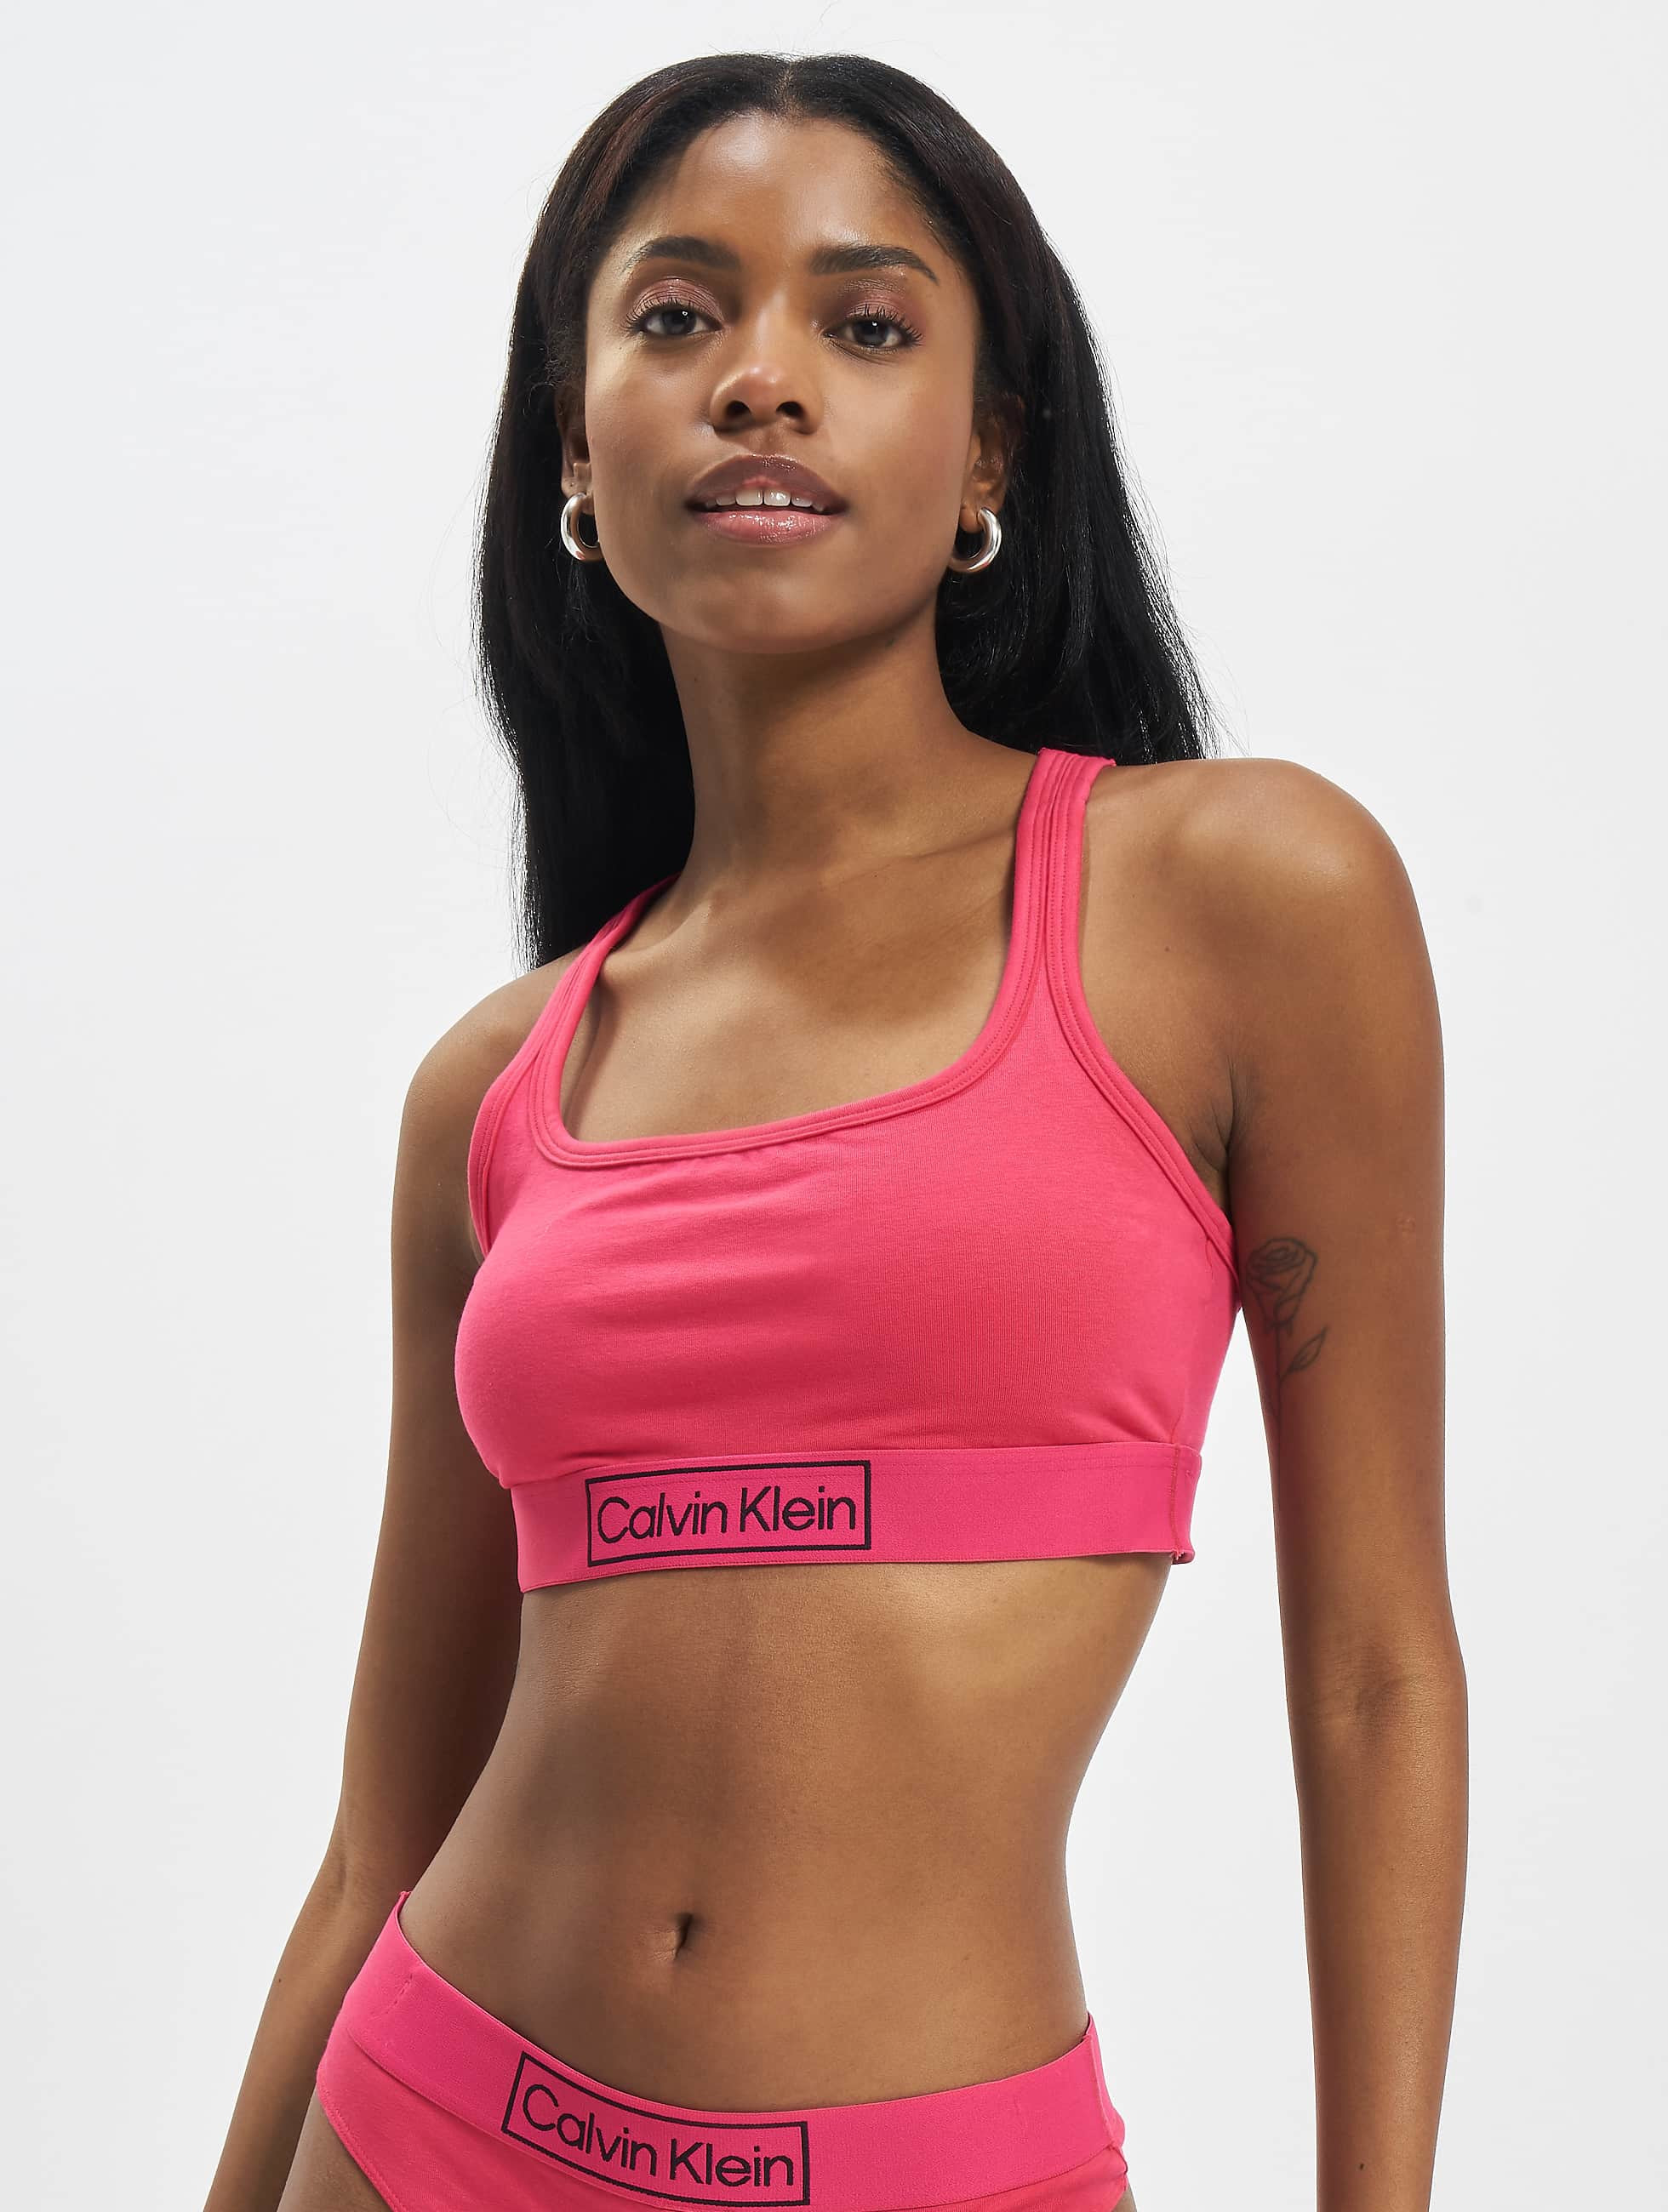 Calvin Klein Underwear / Beachwear / Underwear Underwear Unlined in pink  972429